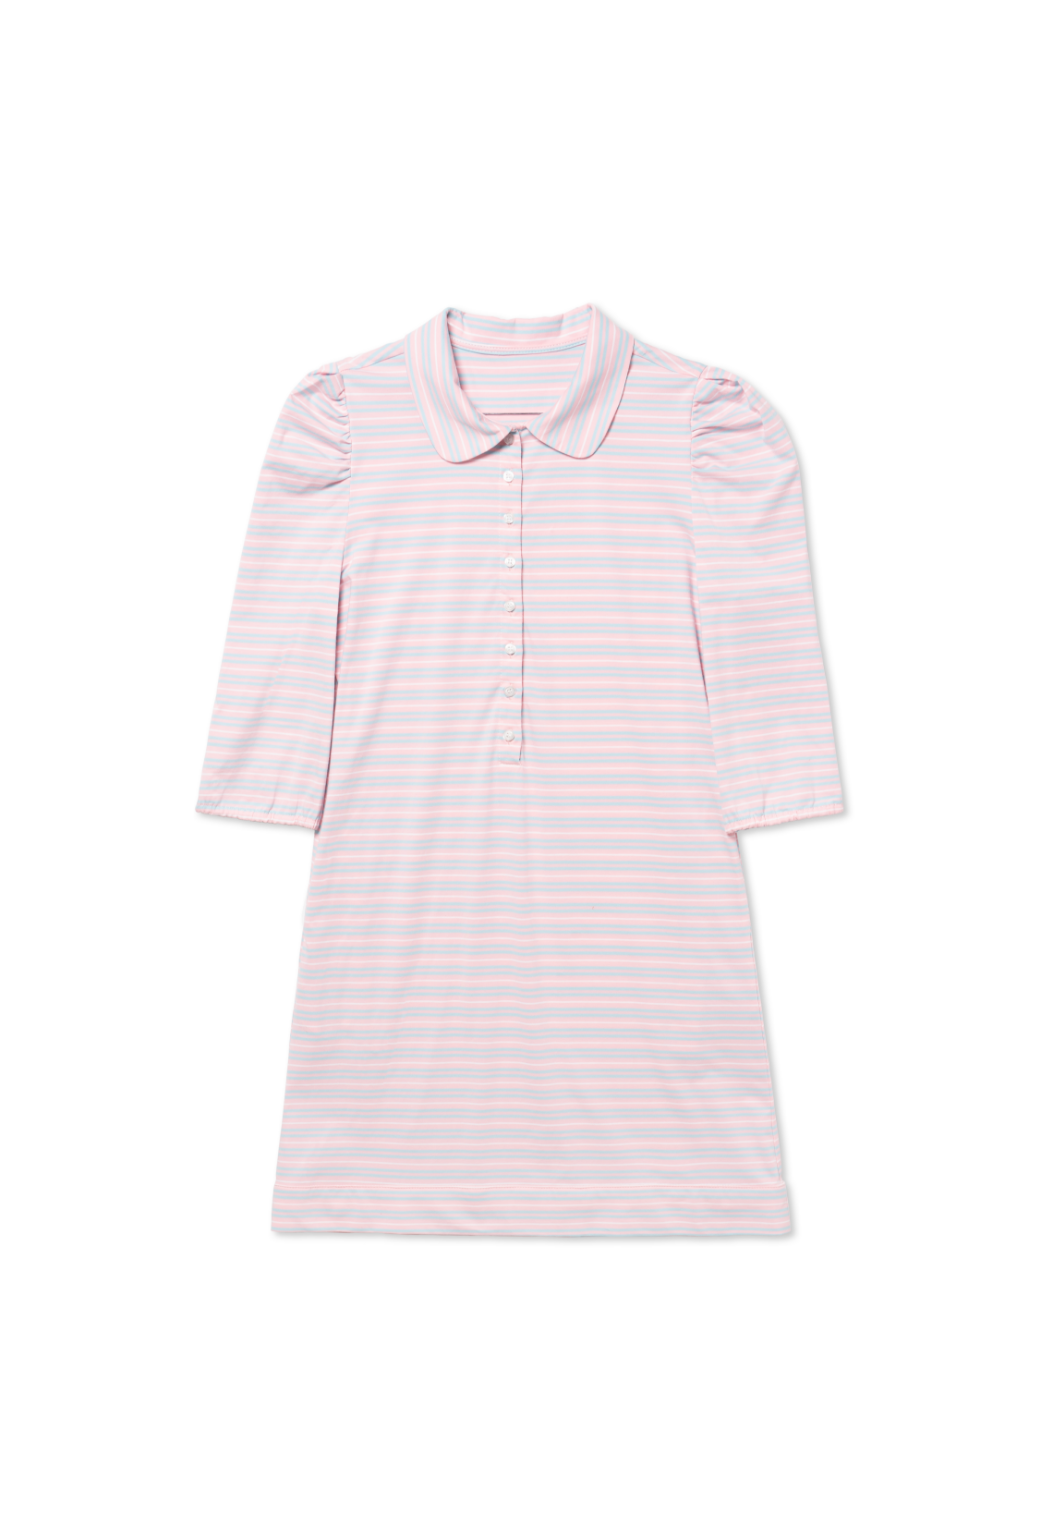 Puff Sleeve T-Shirt Dress - Pink & Blue Stripe